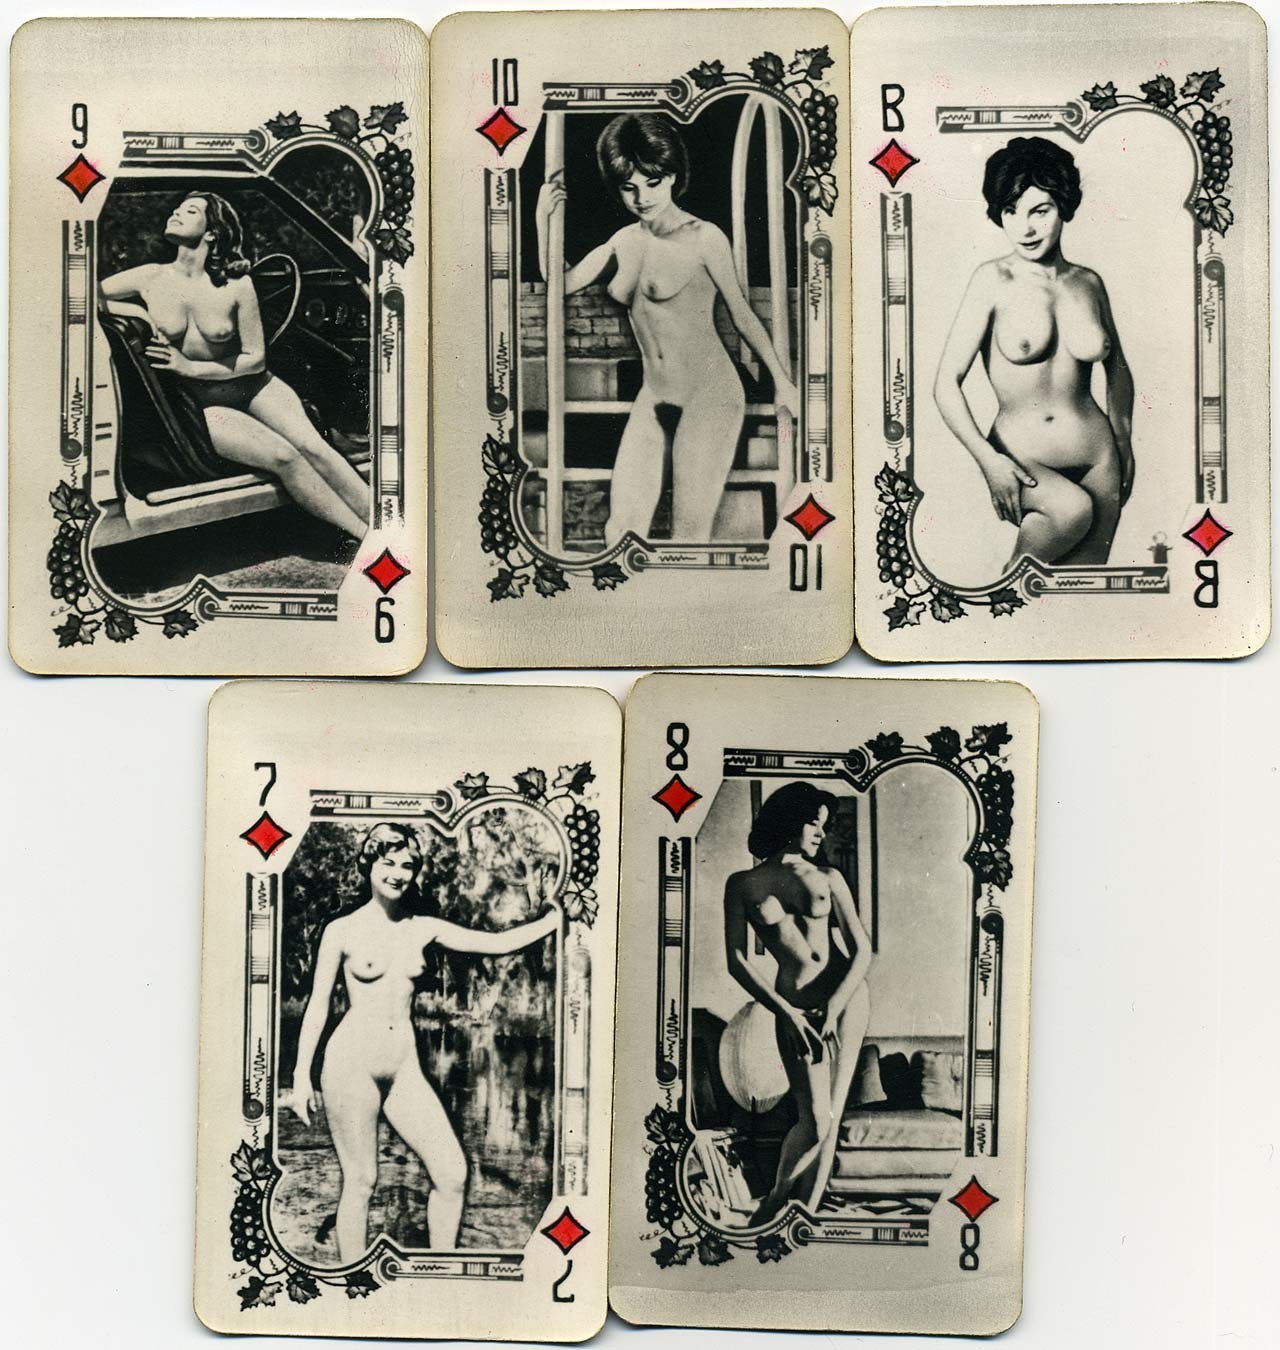 ретро игральные карты эротика фото 1